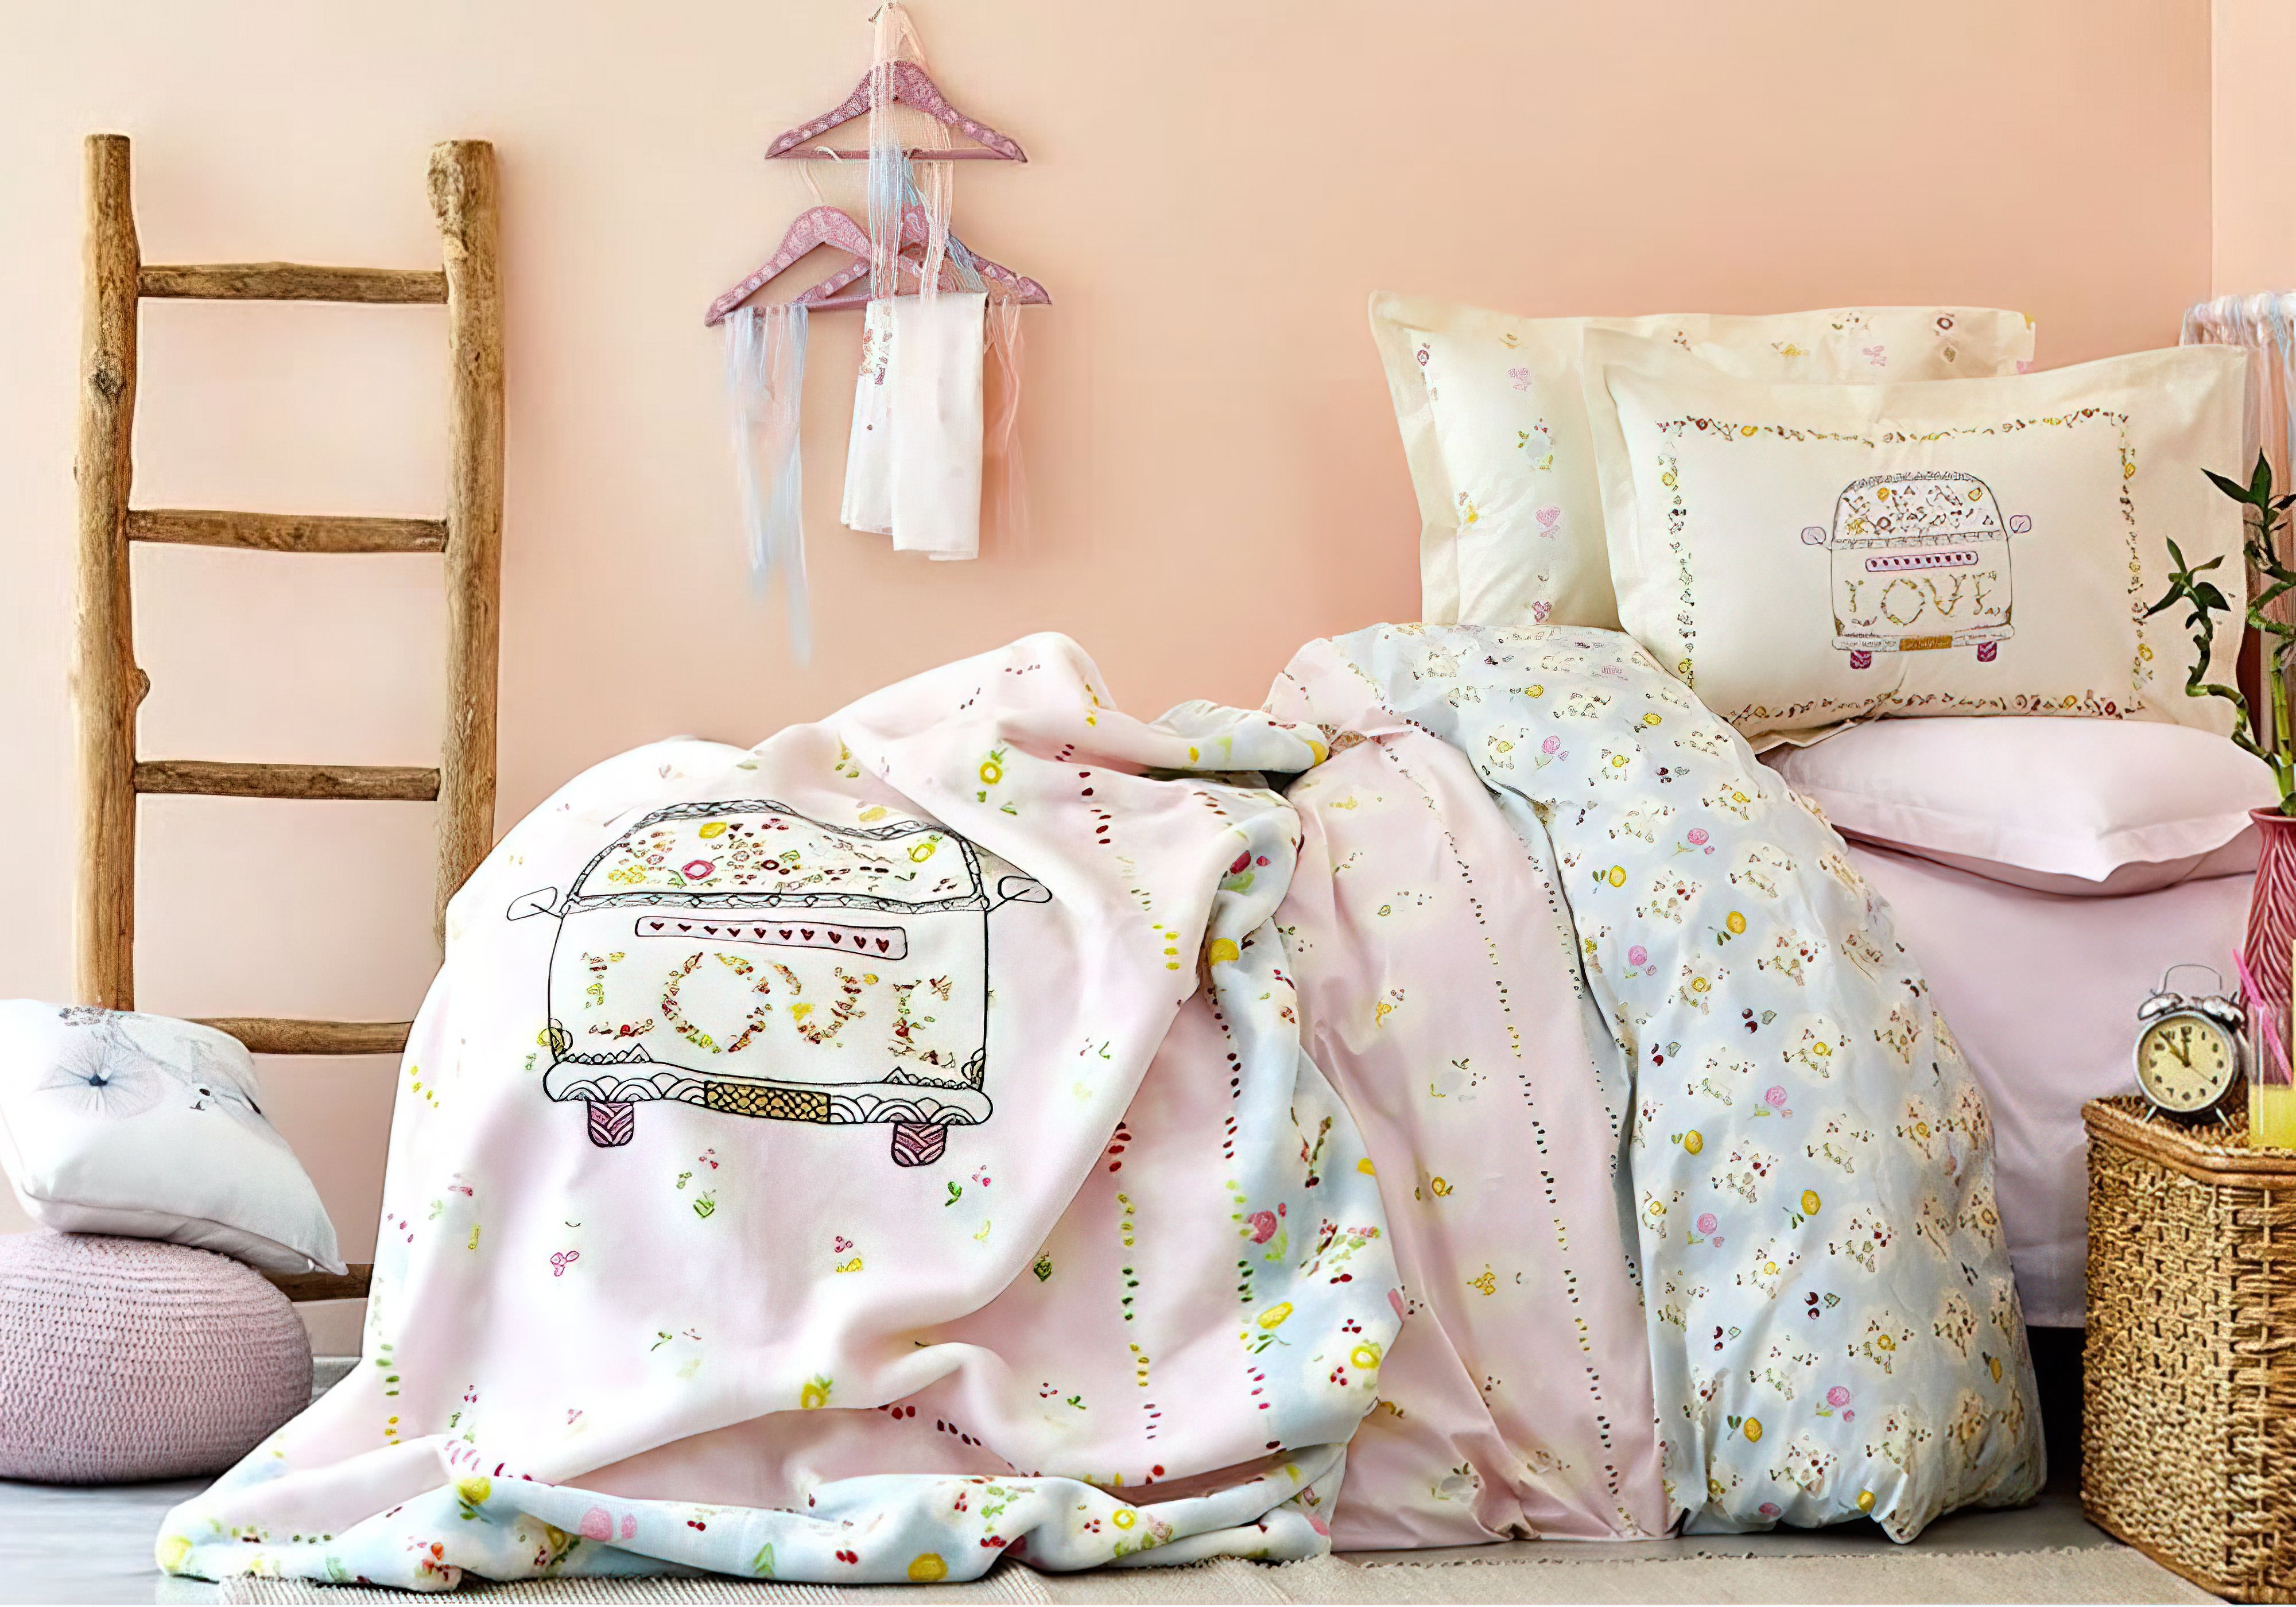 Комплект детского постельного белья Litzy 2018-1 Karaca Home, Количество спальных мест Двуспальный